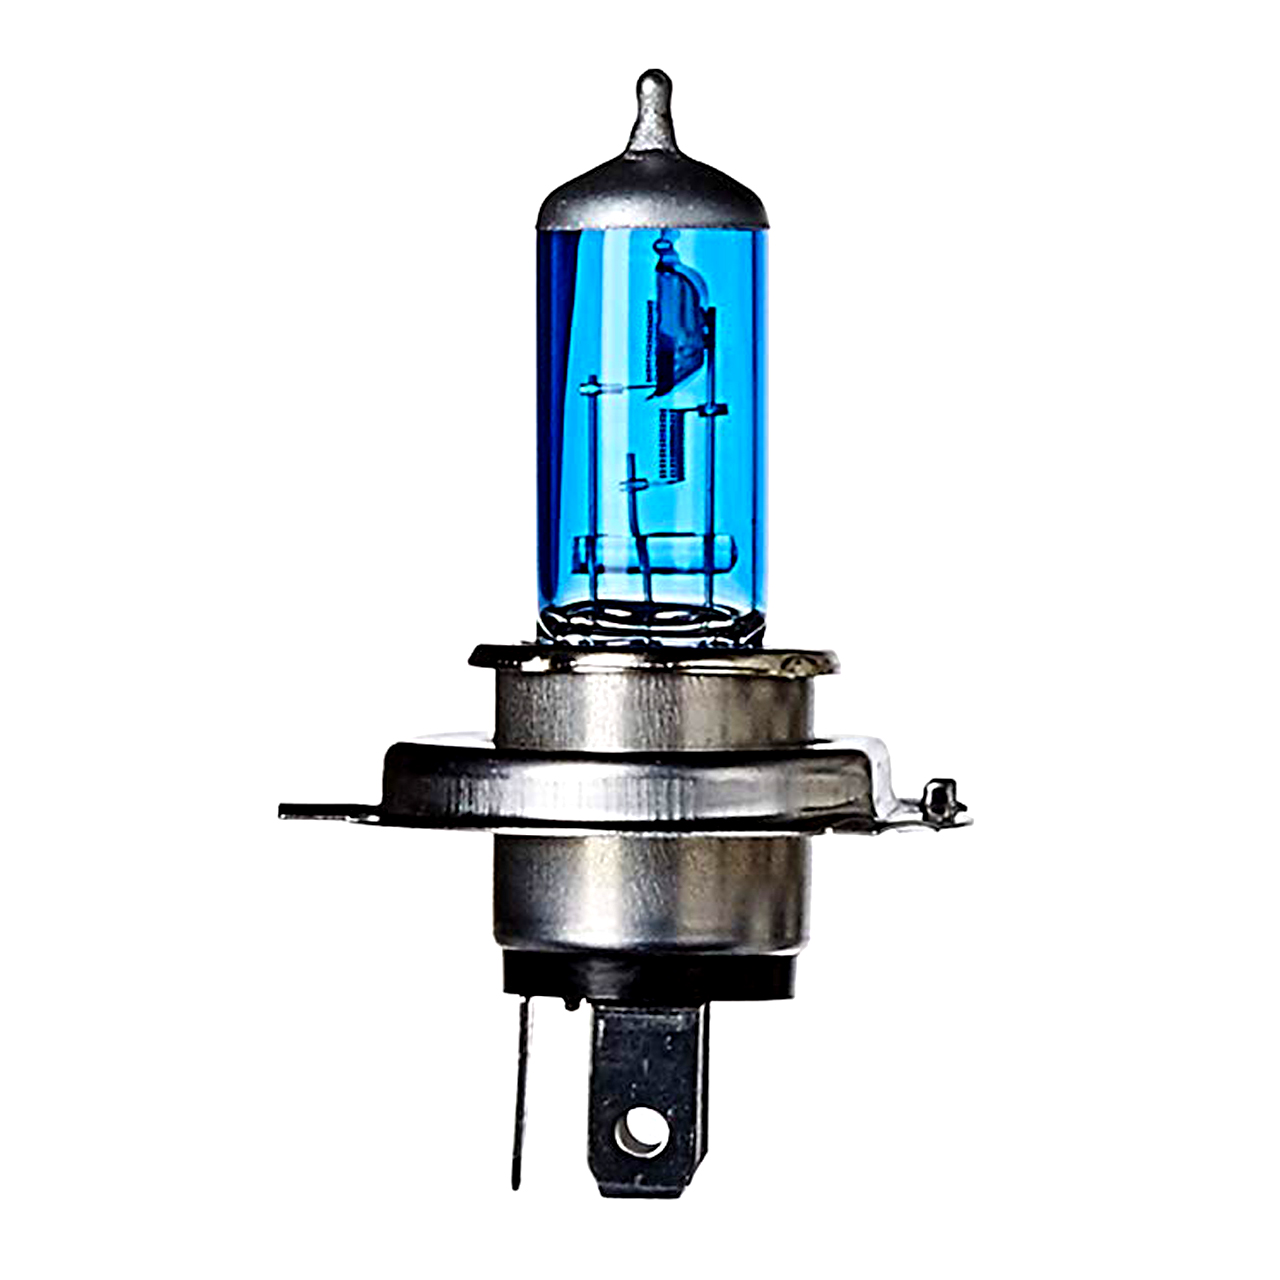 لامپ خودرو فونیکس مدل ultra blue H4 همراه دستکش Nitrile